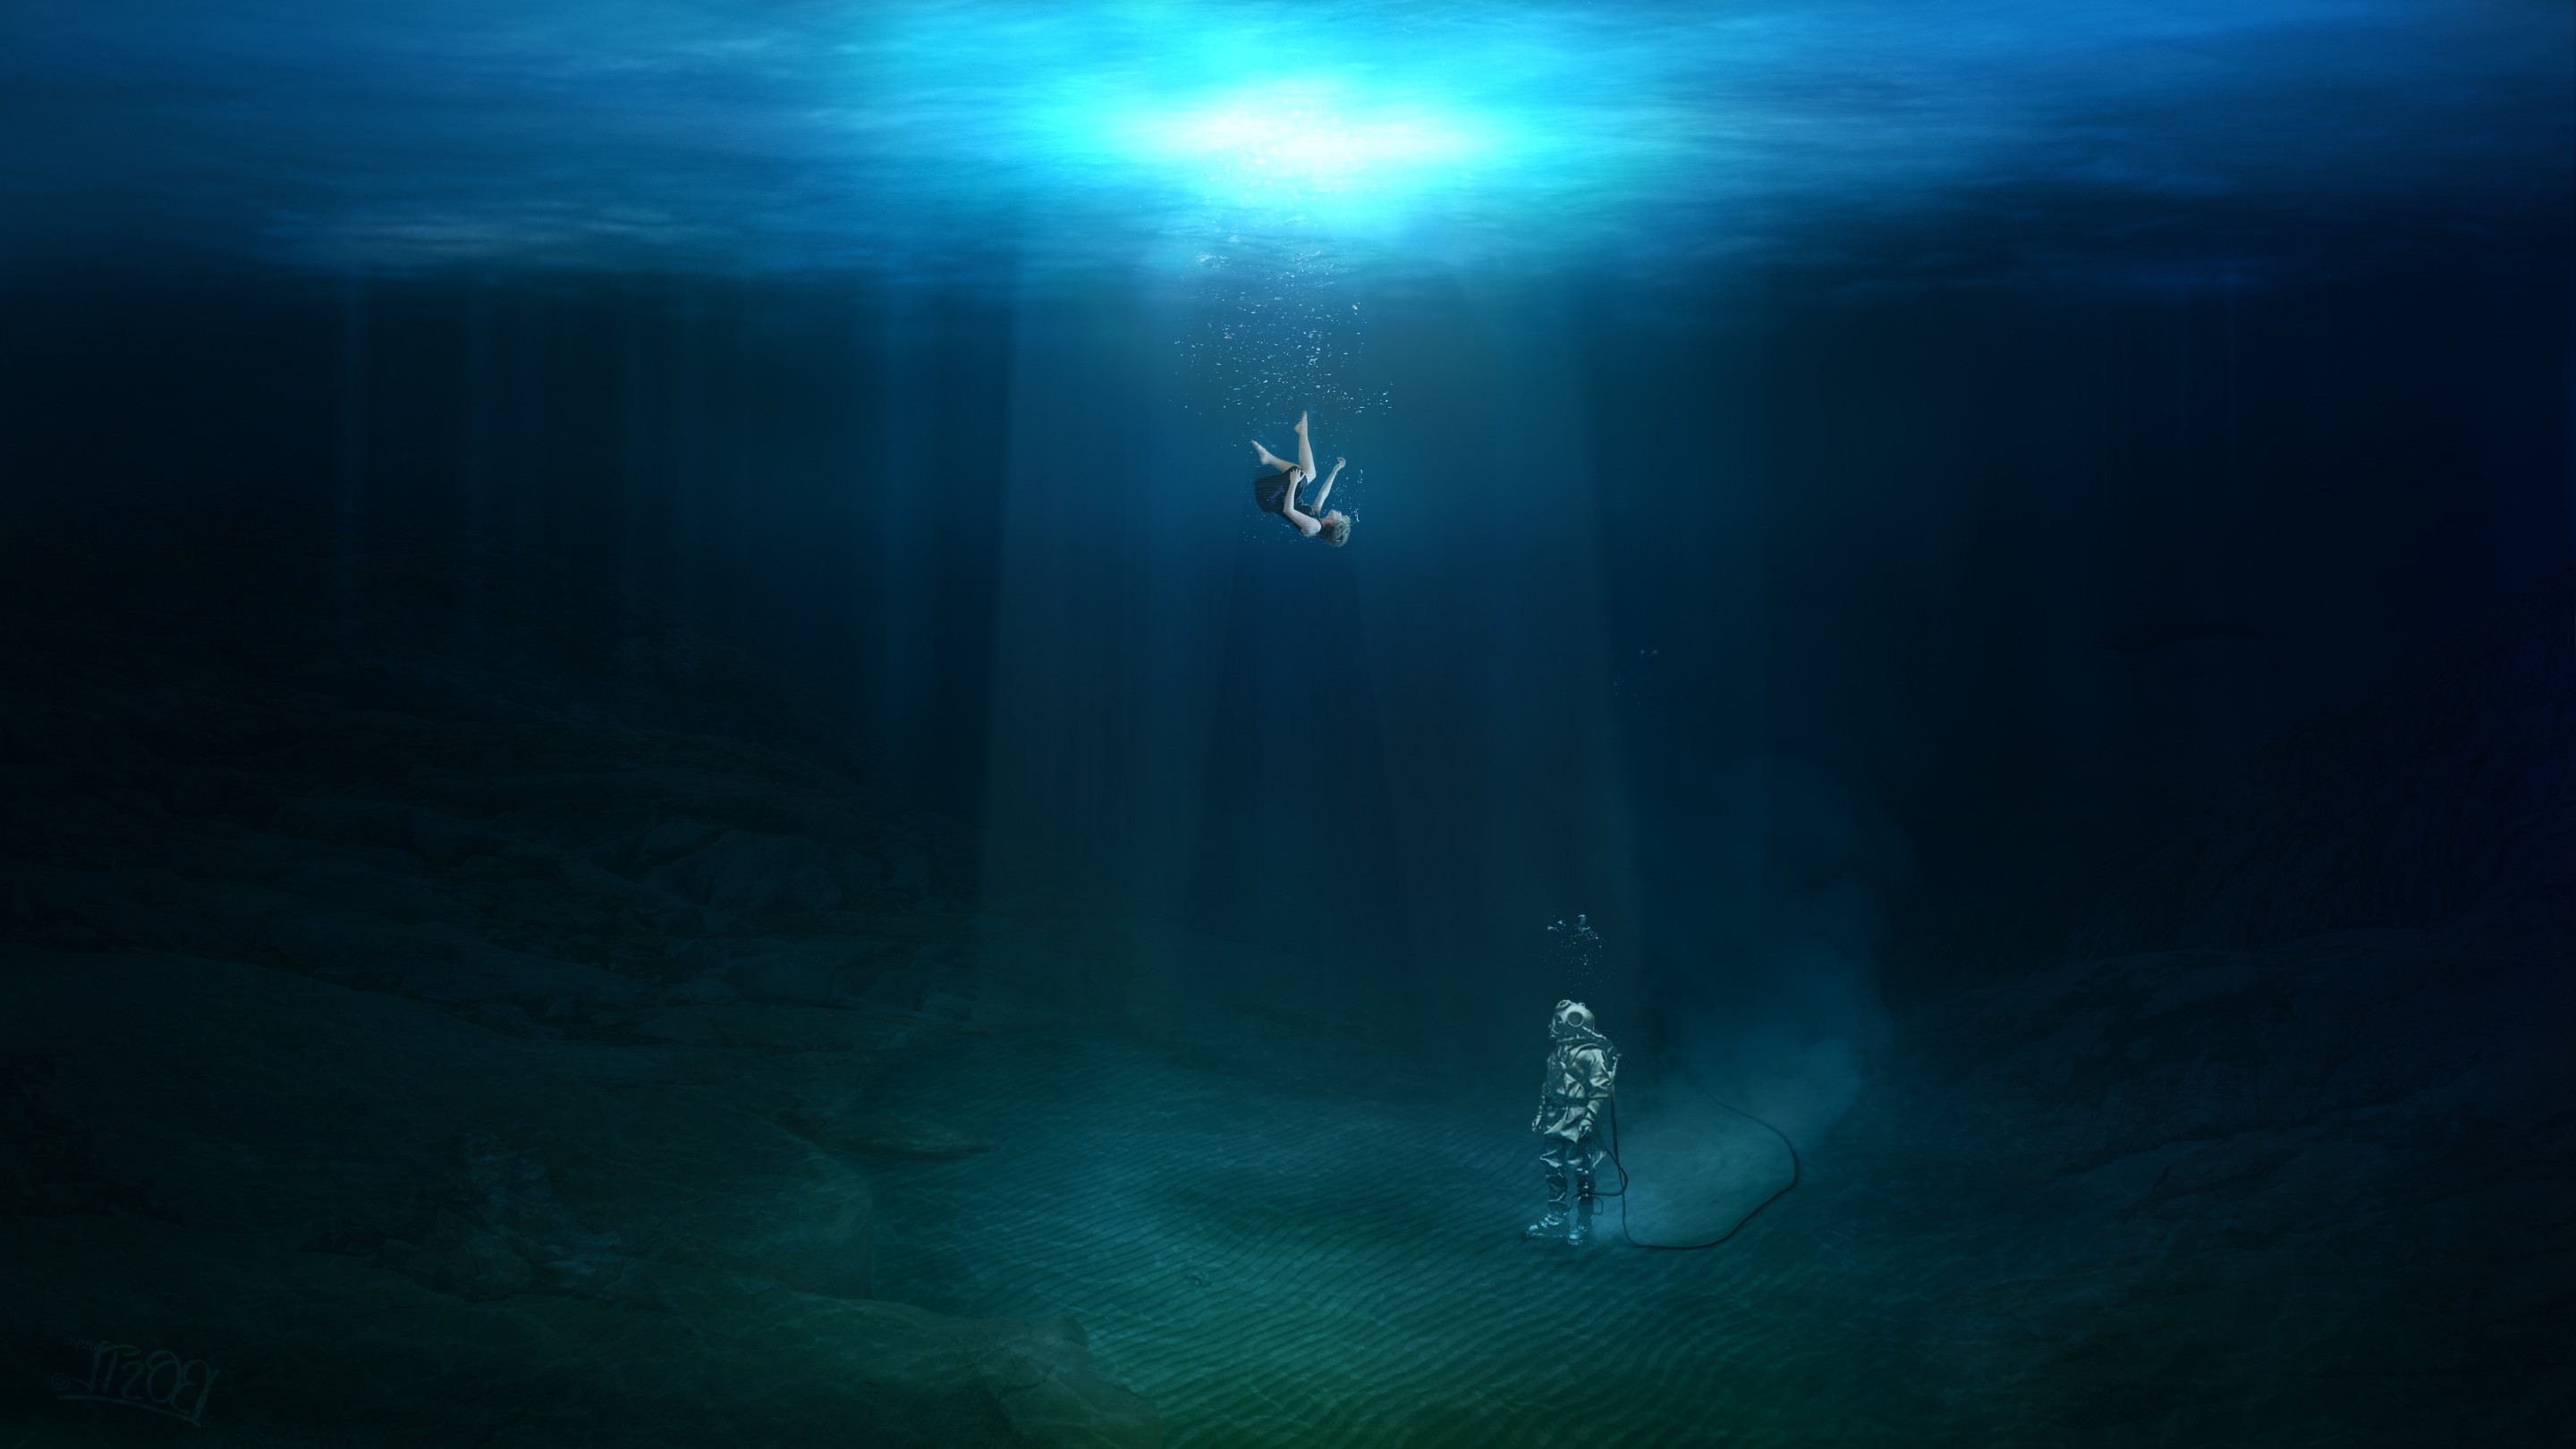 fantasy Art, Underwater, Original Characters, Falling, Divers, Water